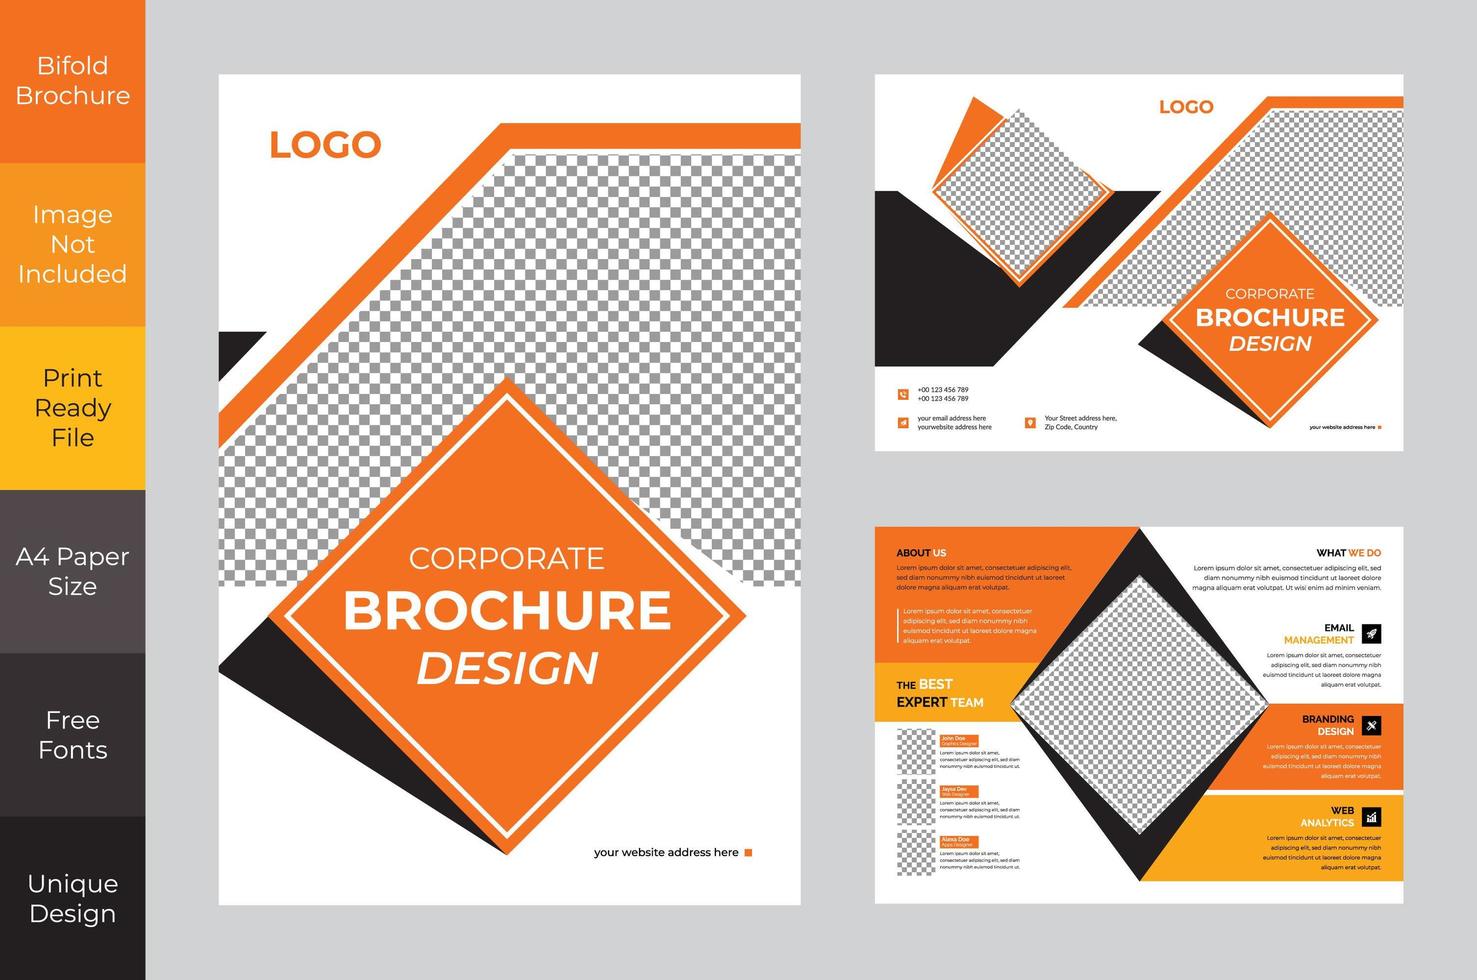 Zweifach Gefaltetes Broschuren Design Fur Unternehmen In Orange Und Schwarz Download Kostenlos Vector Clipart Graphics Vektorgrafiken Und Design Vorlagen